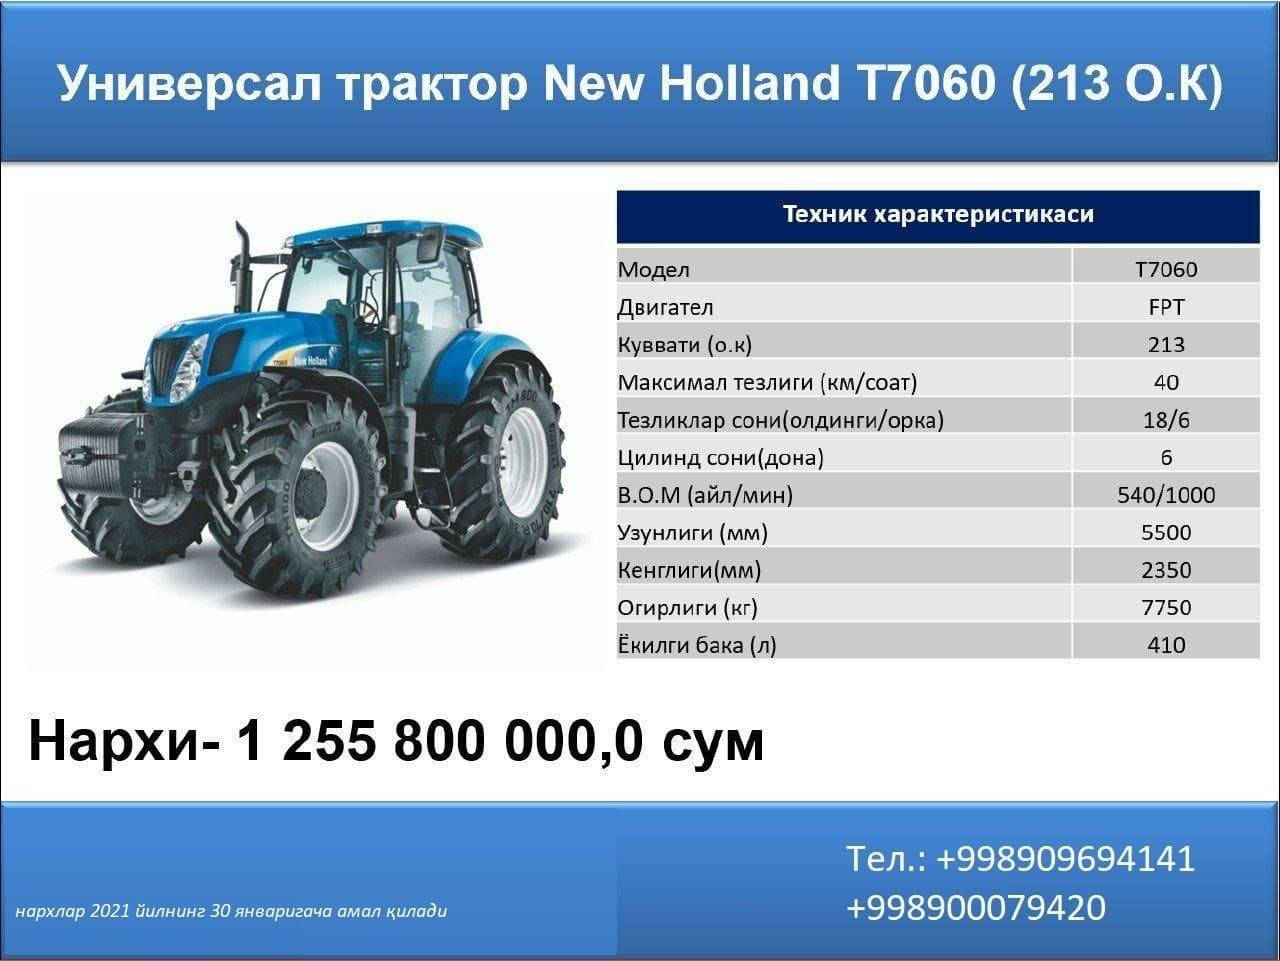 Особенности, виды и характеристики тракторов new holland